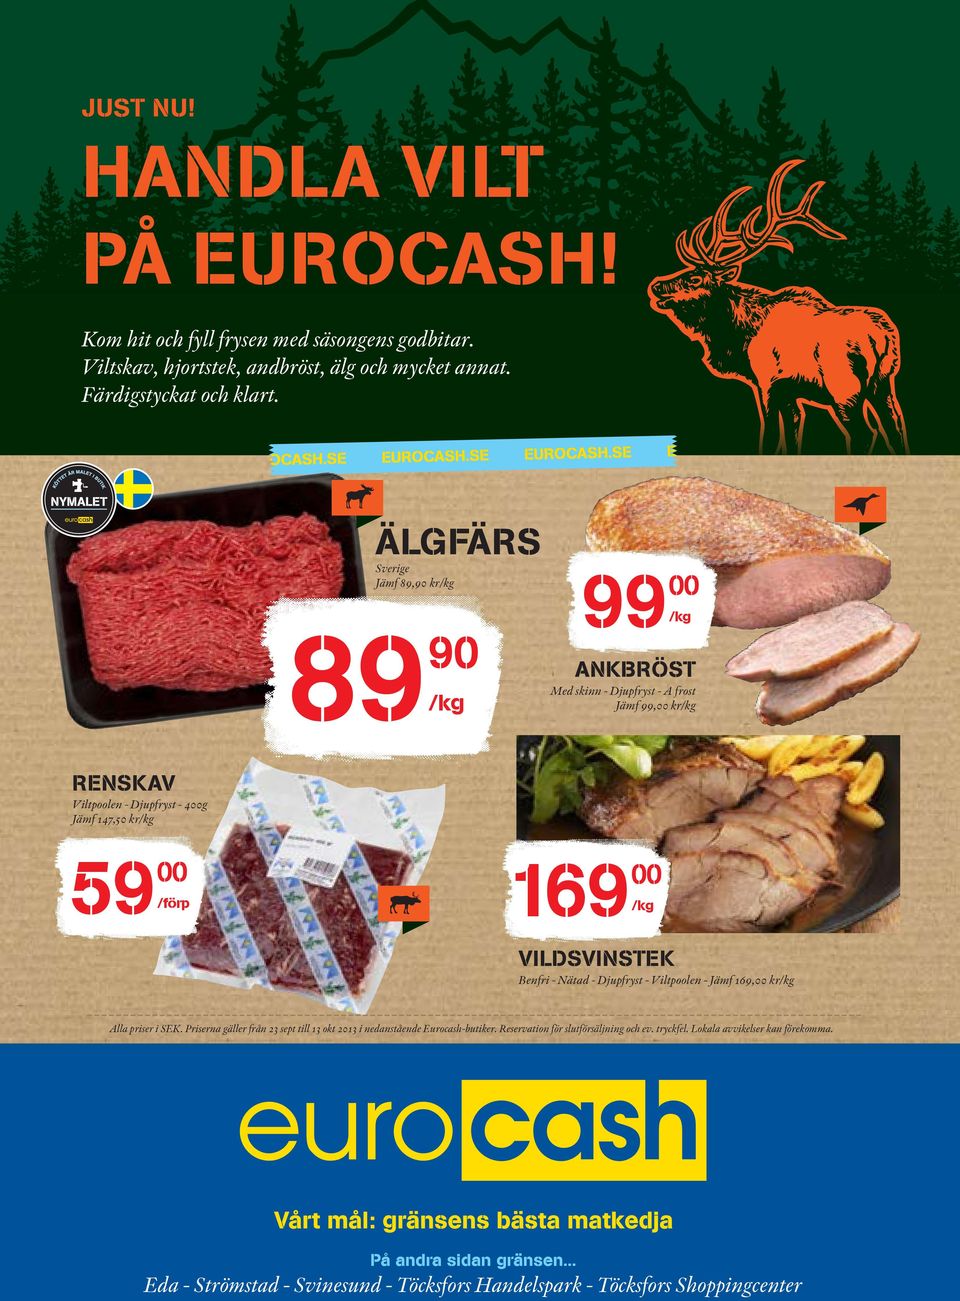 Nätad - Djupfryst - Viltpoolen - Jämf 169, kr Alla priser i SEK. Priserna gäller från 23 sept till 13 okt 2013 i nedanstående Eurocash-butiker.